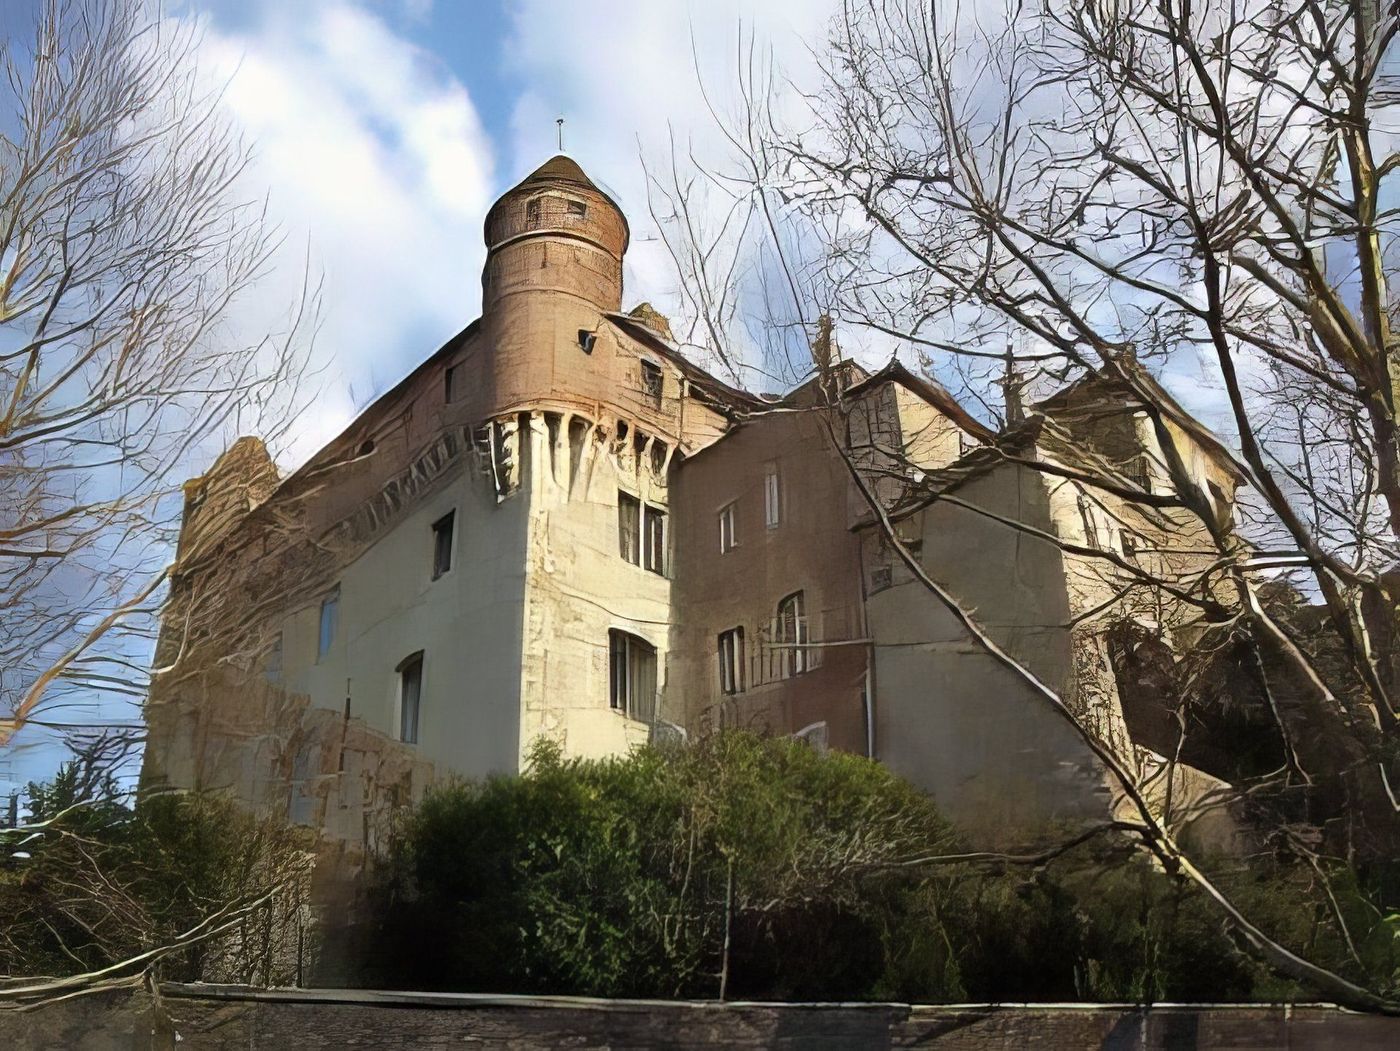 Château Saint-Maire